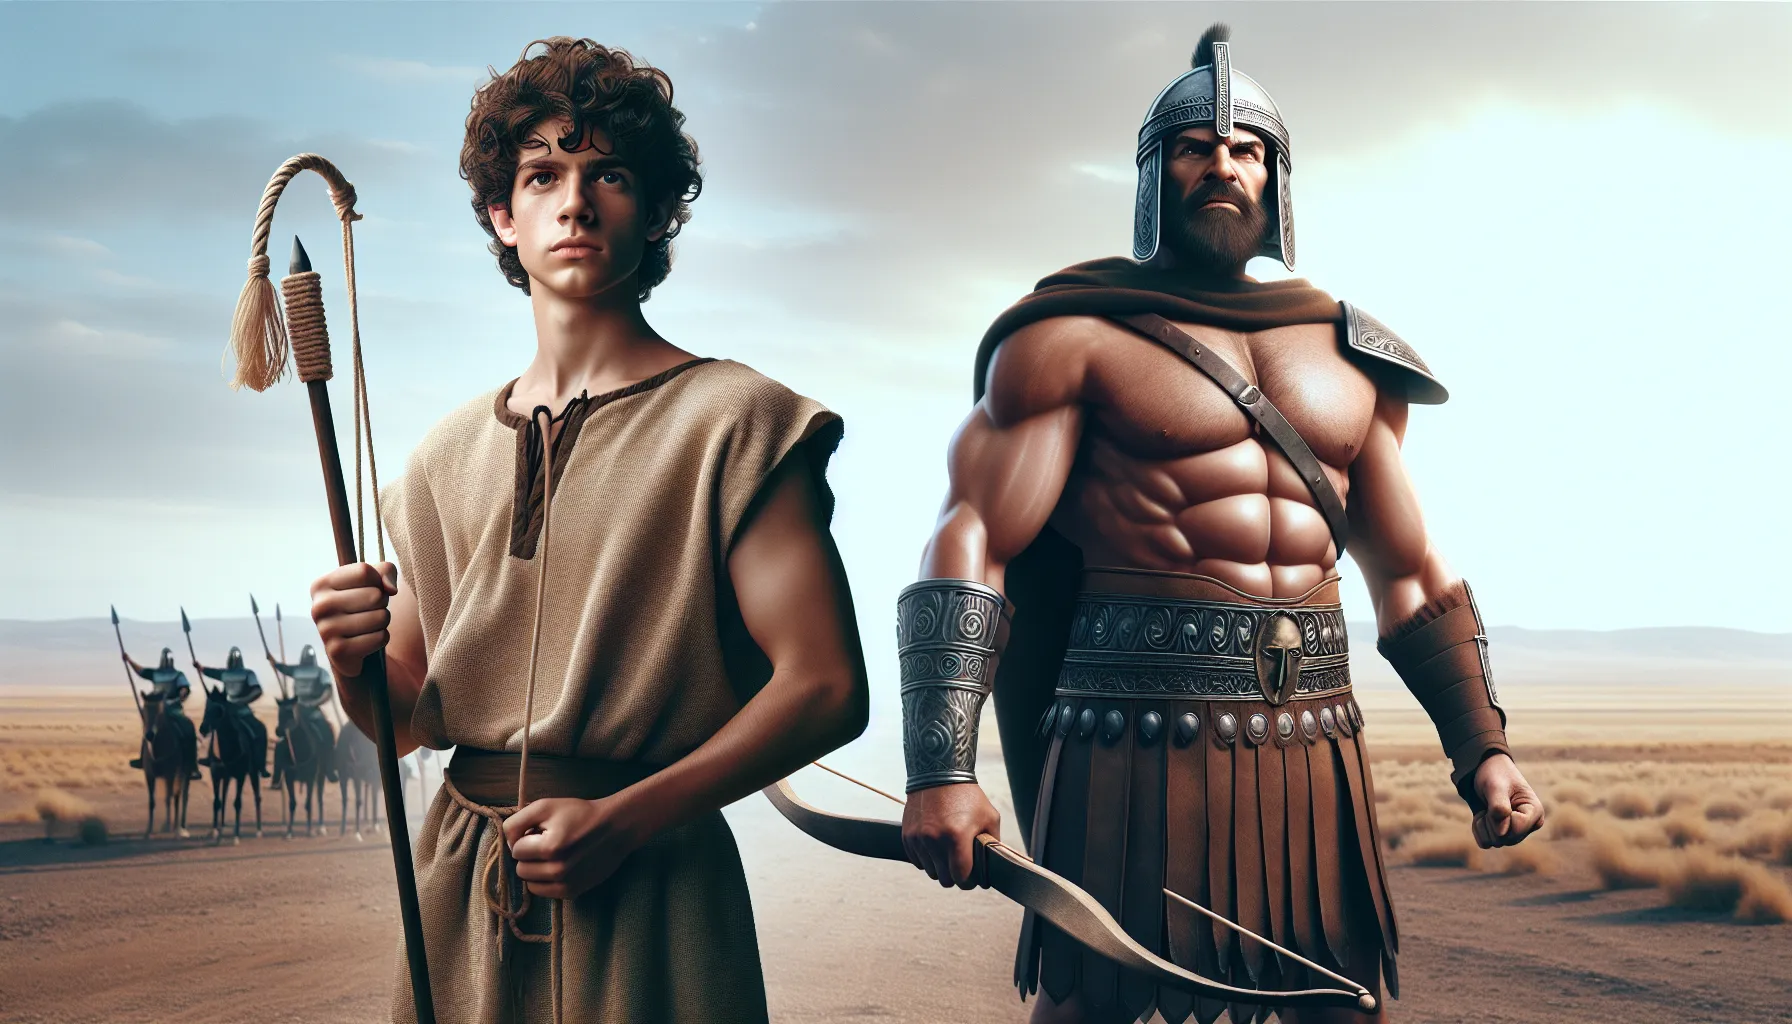 Imagen impactante que representa la historia de David y Goliat, ilustrando la valentía y la superación de los desafíos.